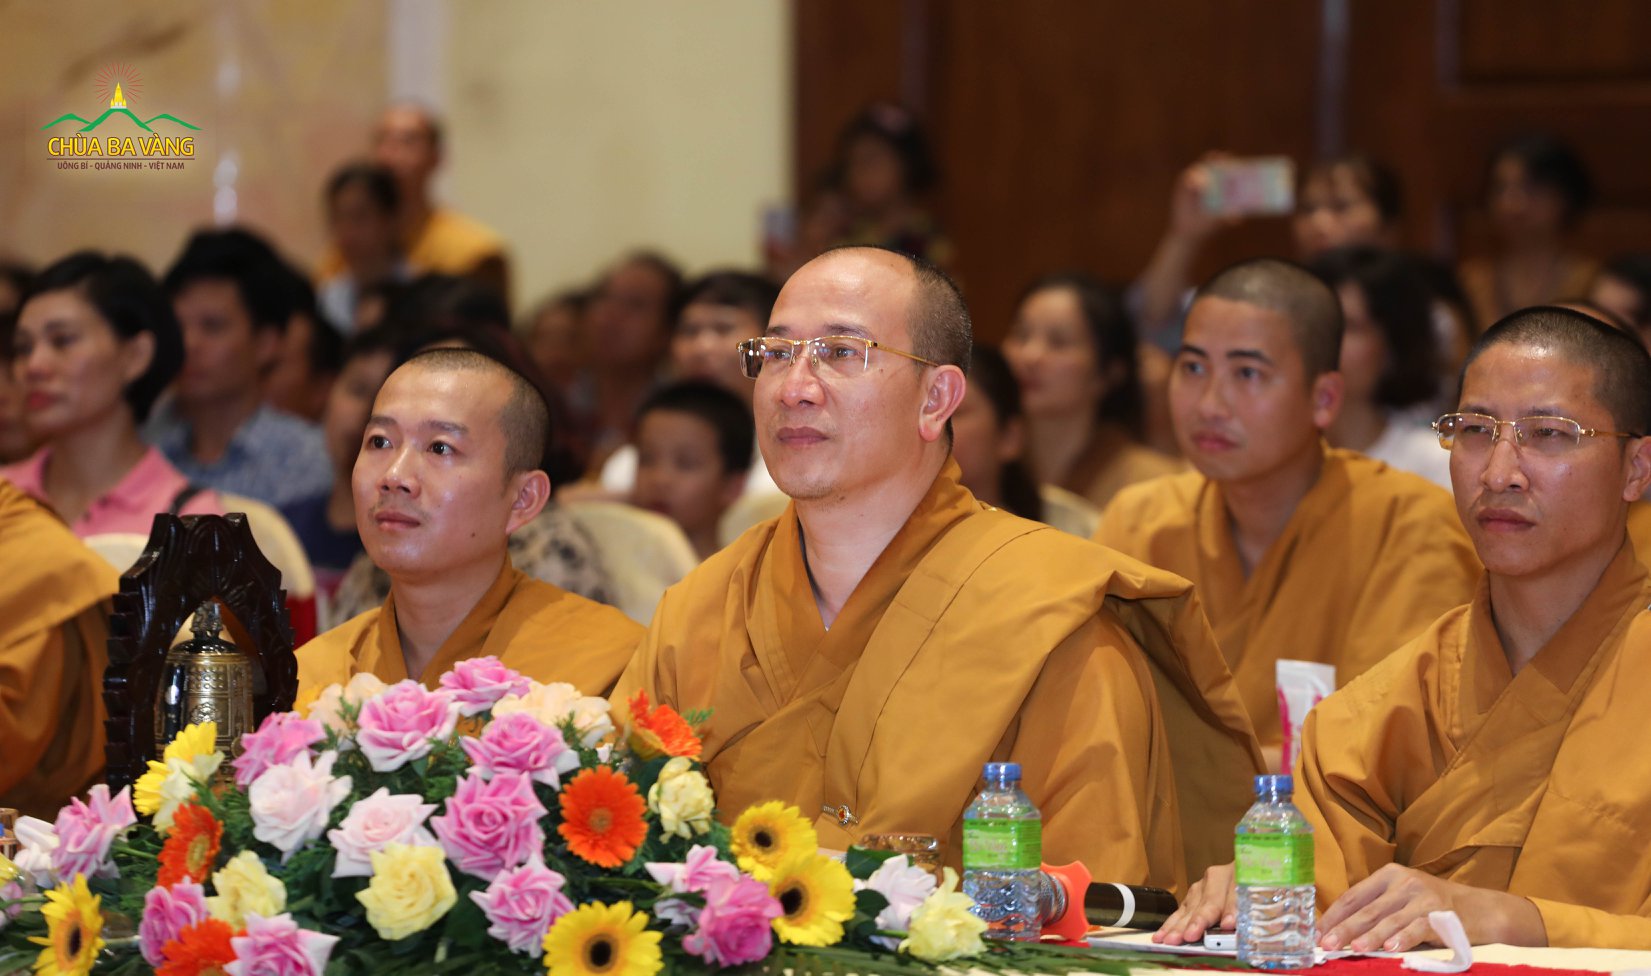 Sư Phụ Thích Trúc Thái Minh - Trưởng Ban tổ chức Khóa Tu Mùa Hè chùa Ba Vàng 2019